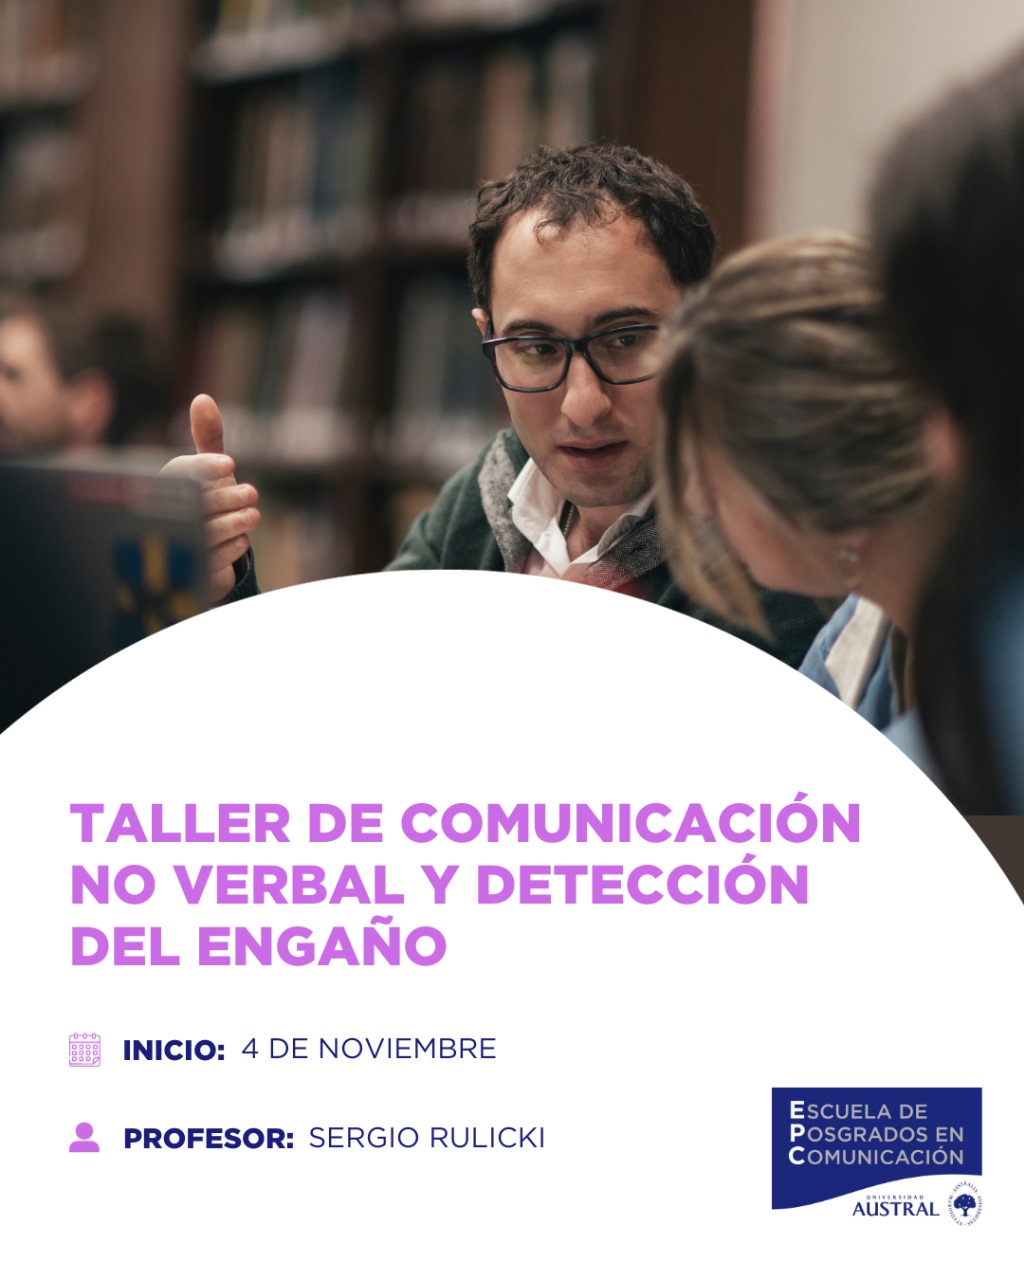 TALLER DE COMUNICACIÓN NO VERBAL Y DETECCIÓN DEL ENGAÑO